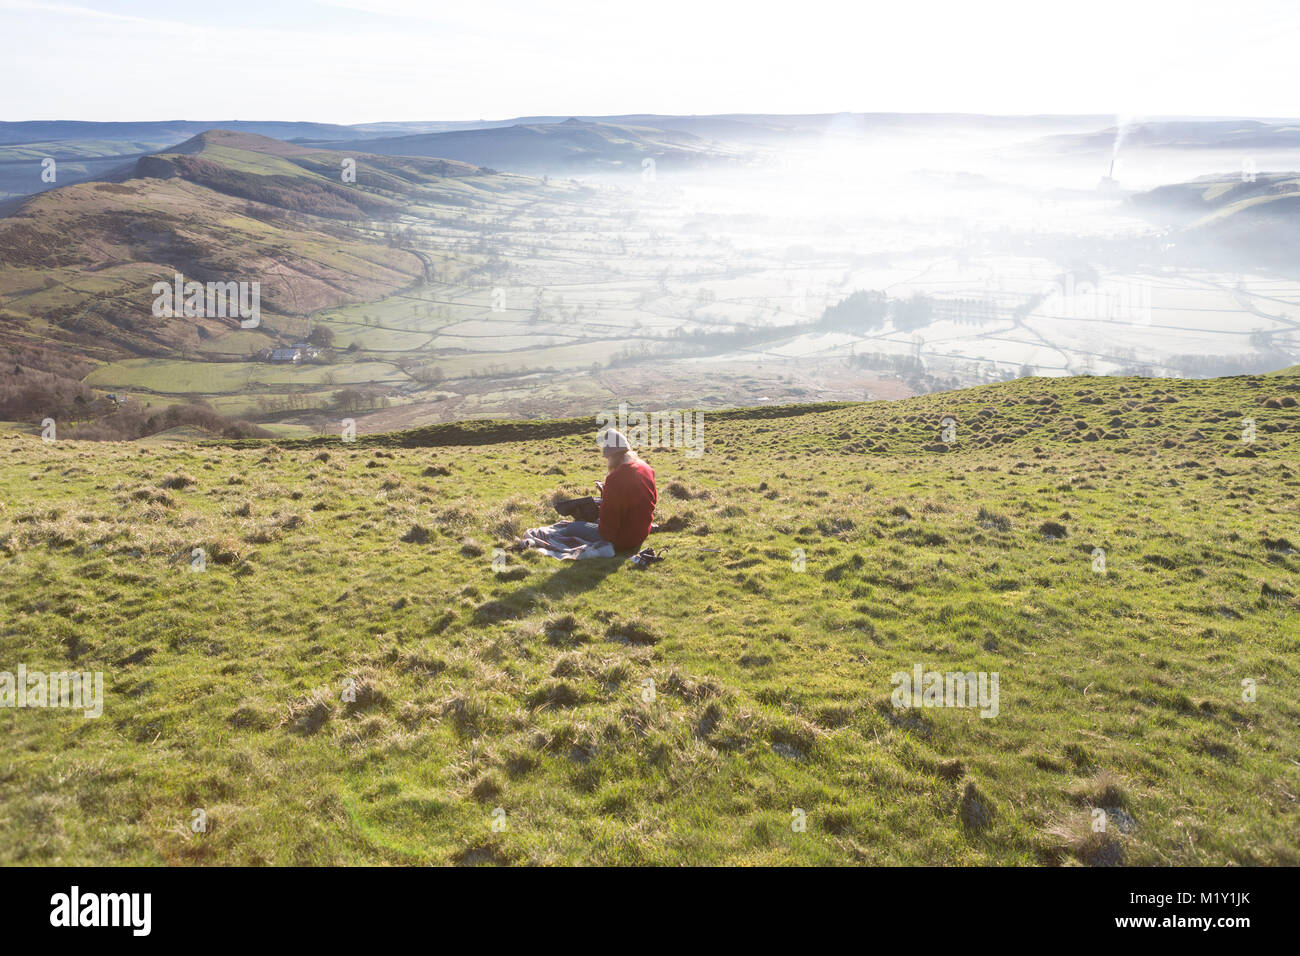 UK, Derbyshire, un walker prendre du repos sur Mam Tor surplombant la vallée de l'espoir. Banque D'Images